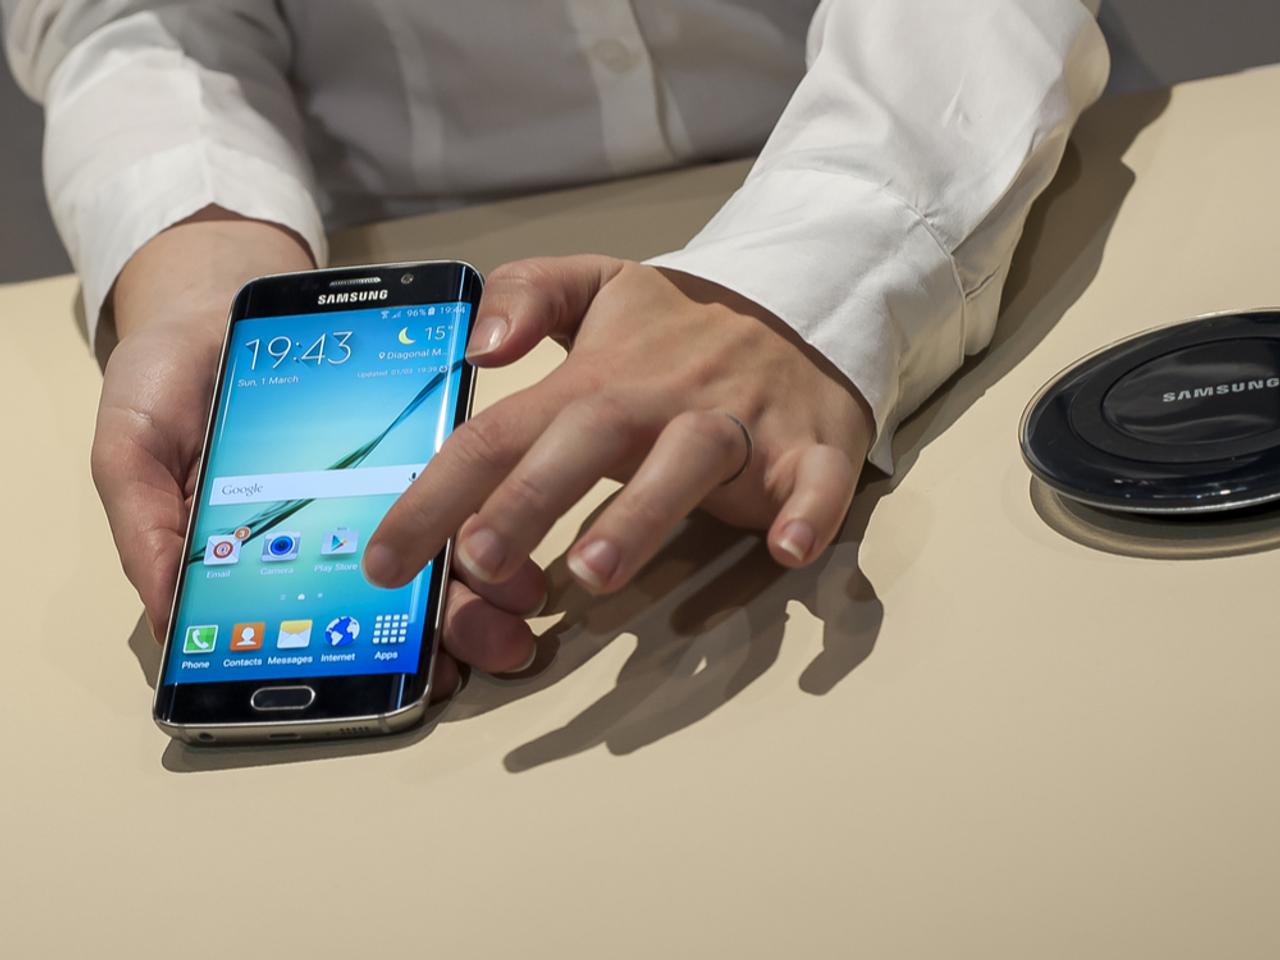 Samsungがジーニアスバーっぽいサービスをアメリカで試験導入